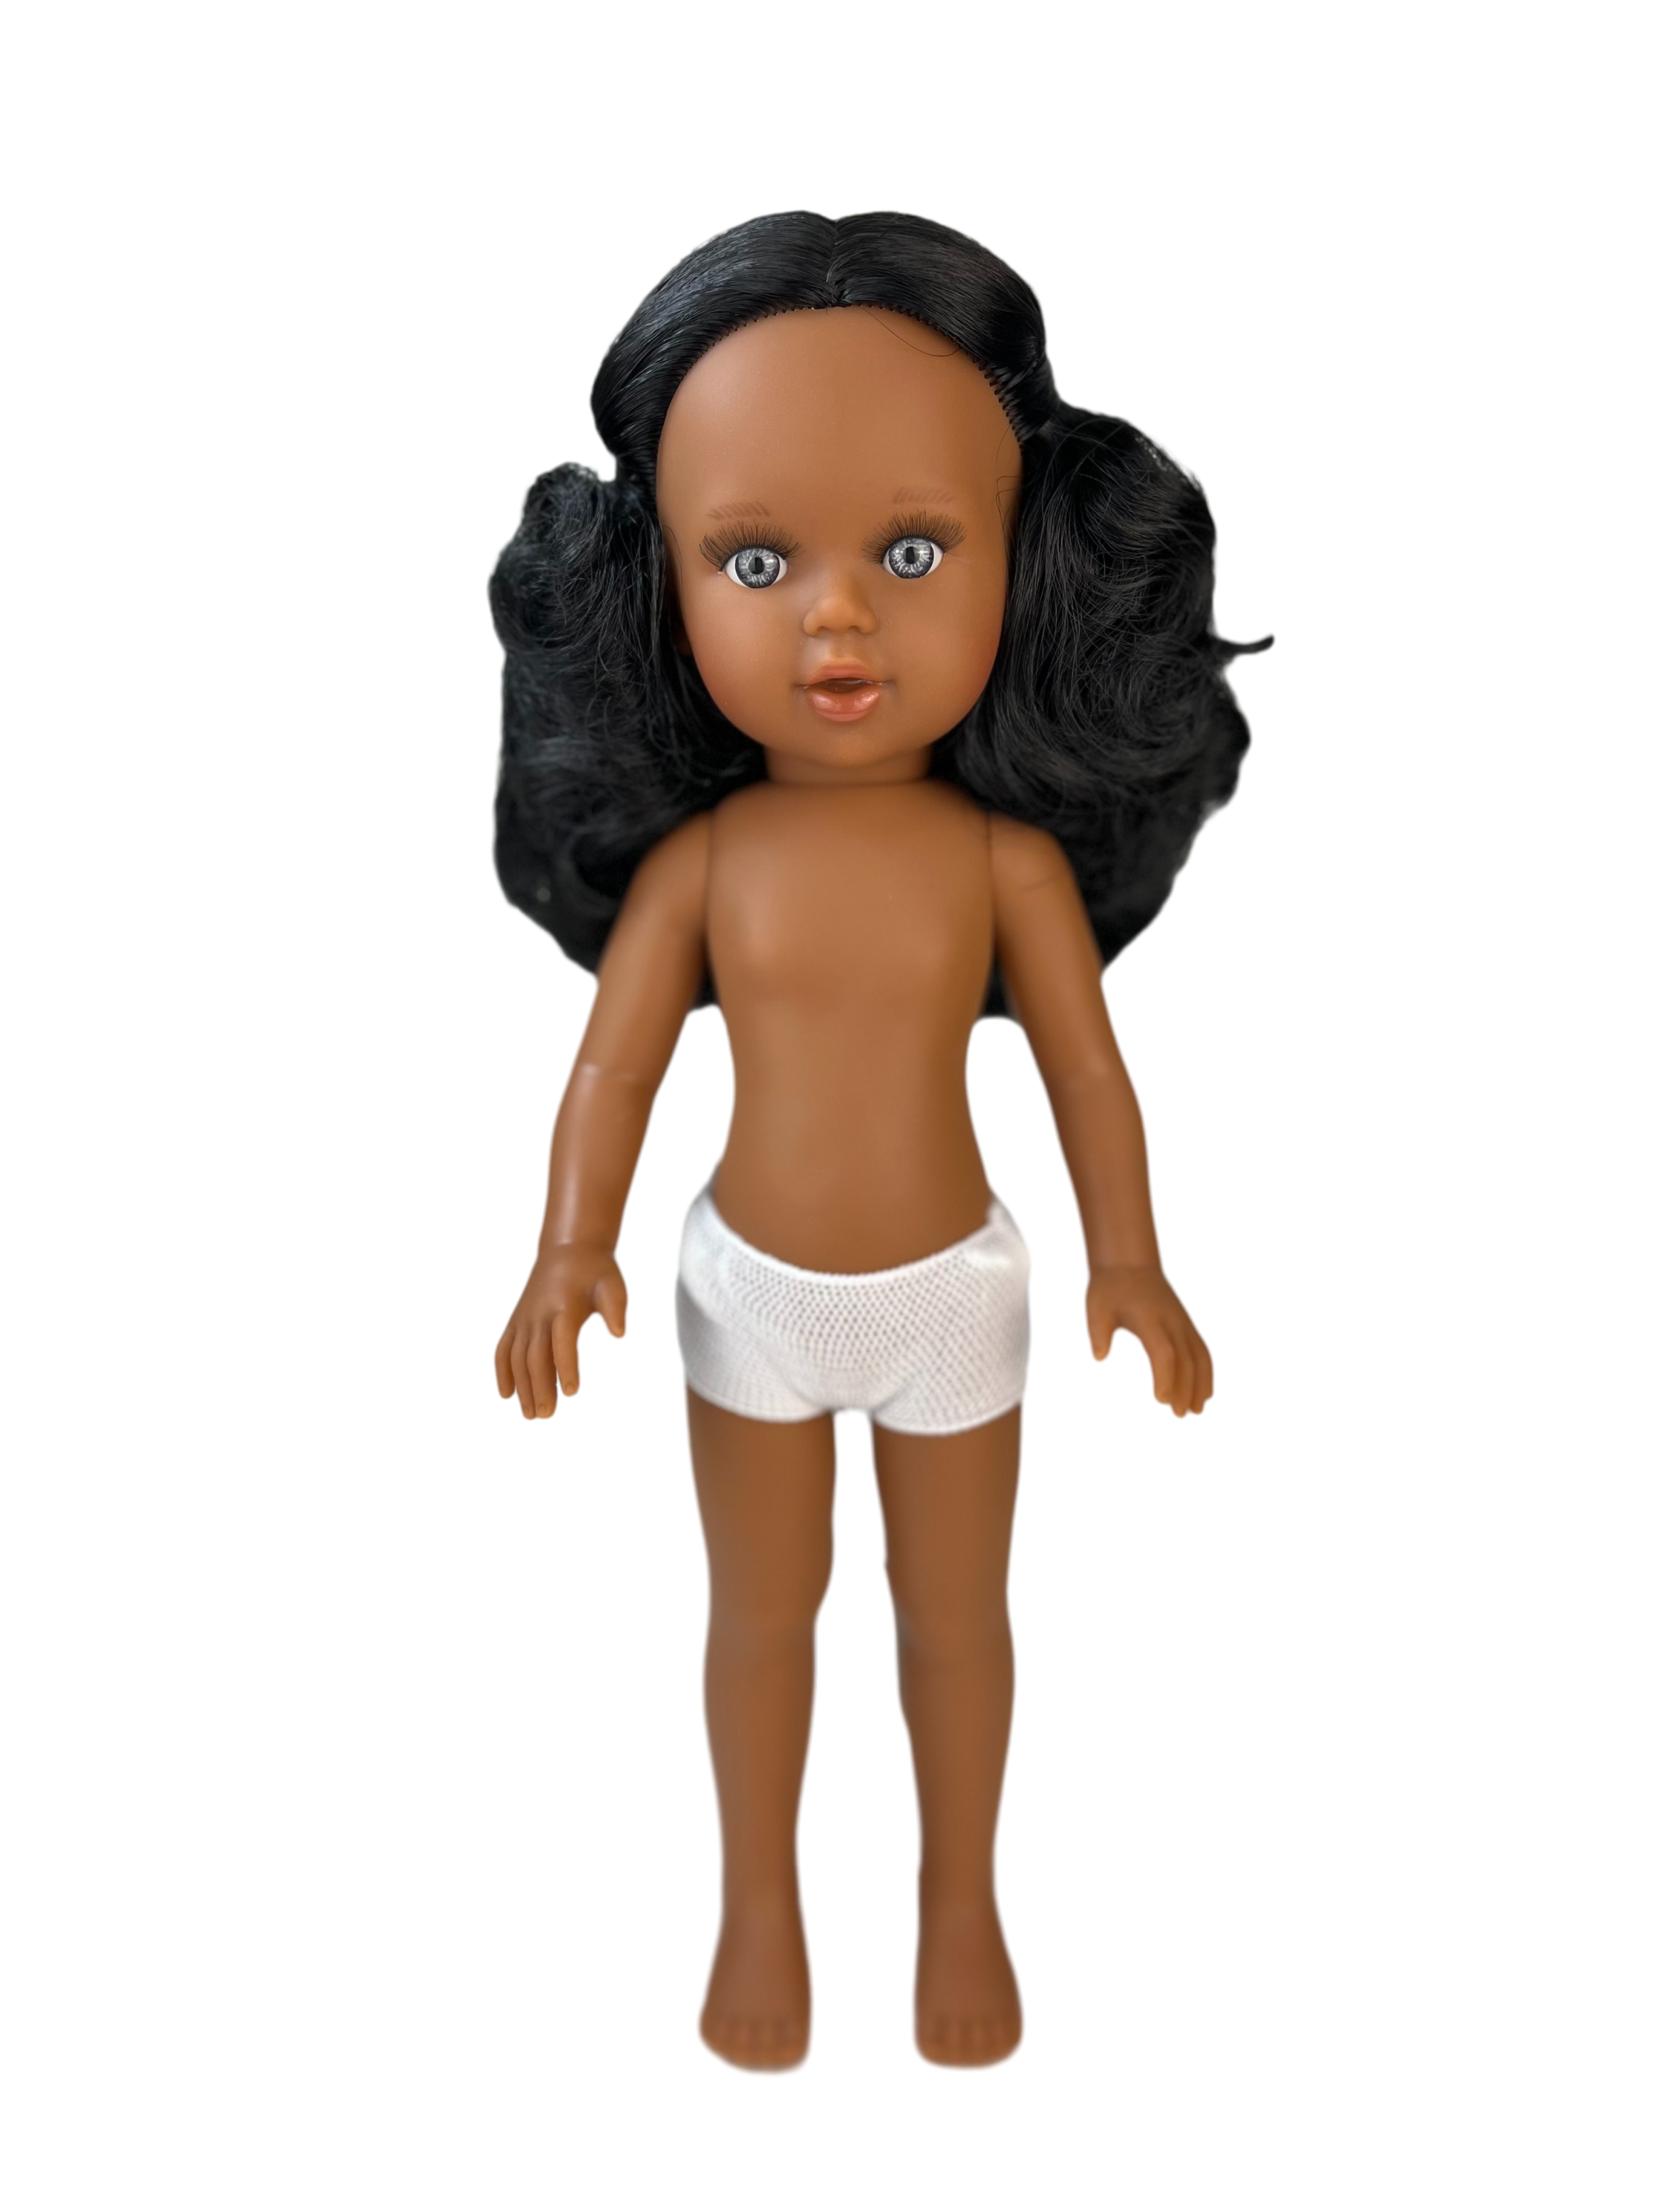 Кукла Marina and Pau Марина, темнокожая, без одежды, 40 см, арт 13-2 роковой оберег марины аевой кукла крымского мага романы